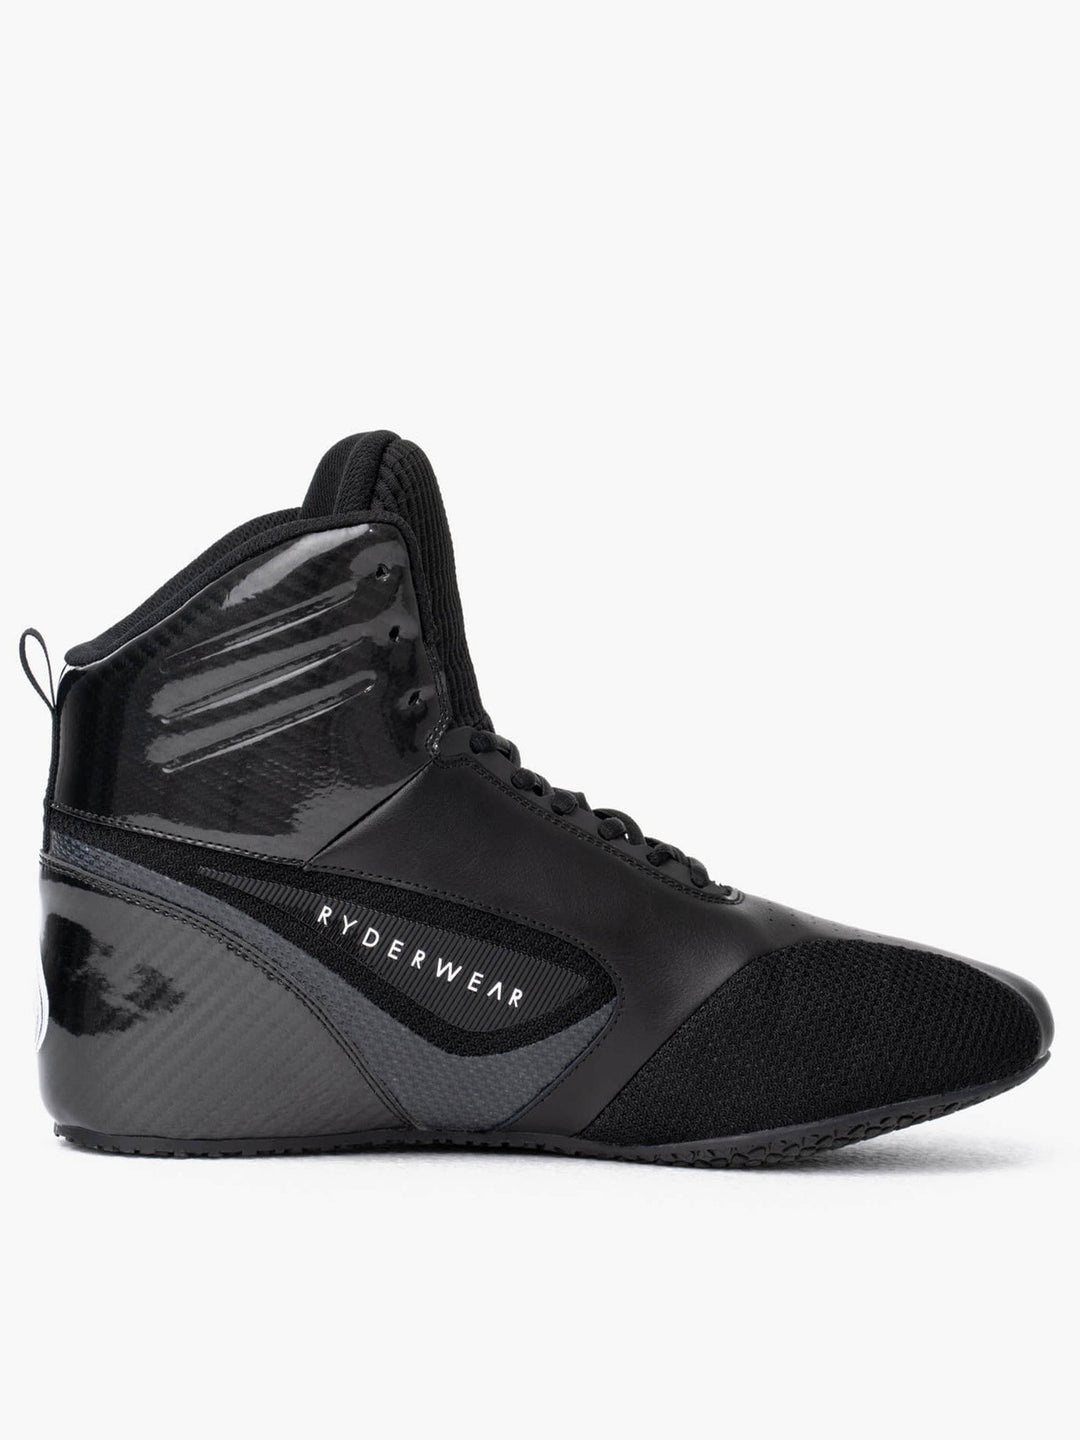 D-Mak Carbon Fibre - Black Weightlifting Shoe